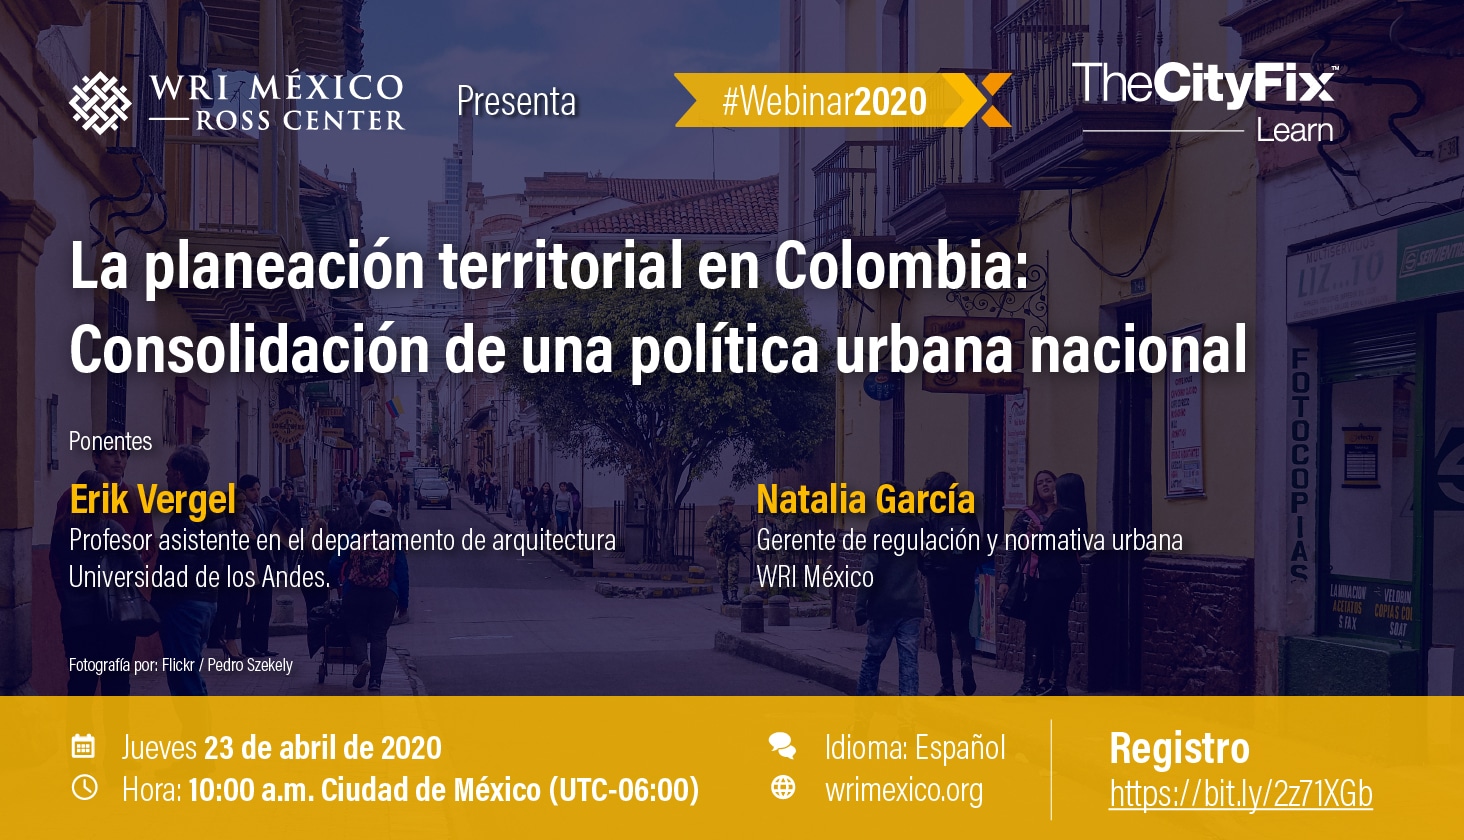 La planeación territorial en Colombia: Consolidación de una política urbana nacional